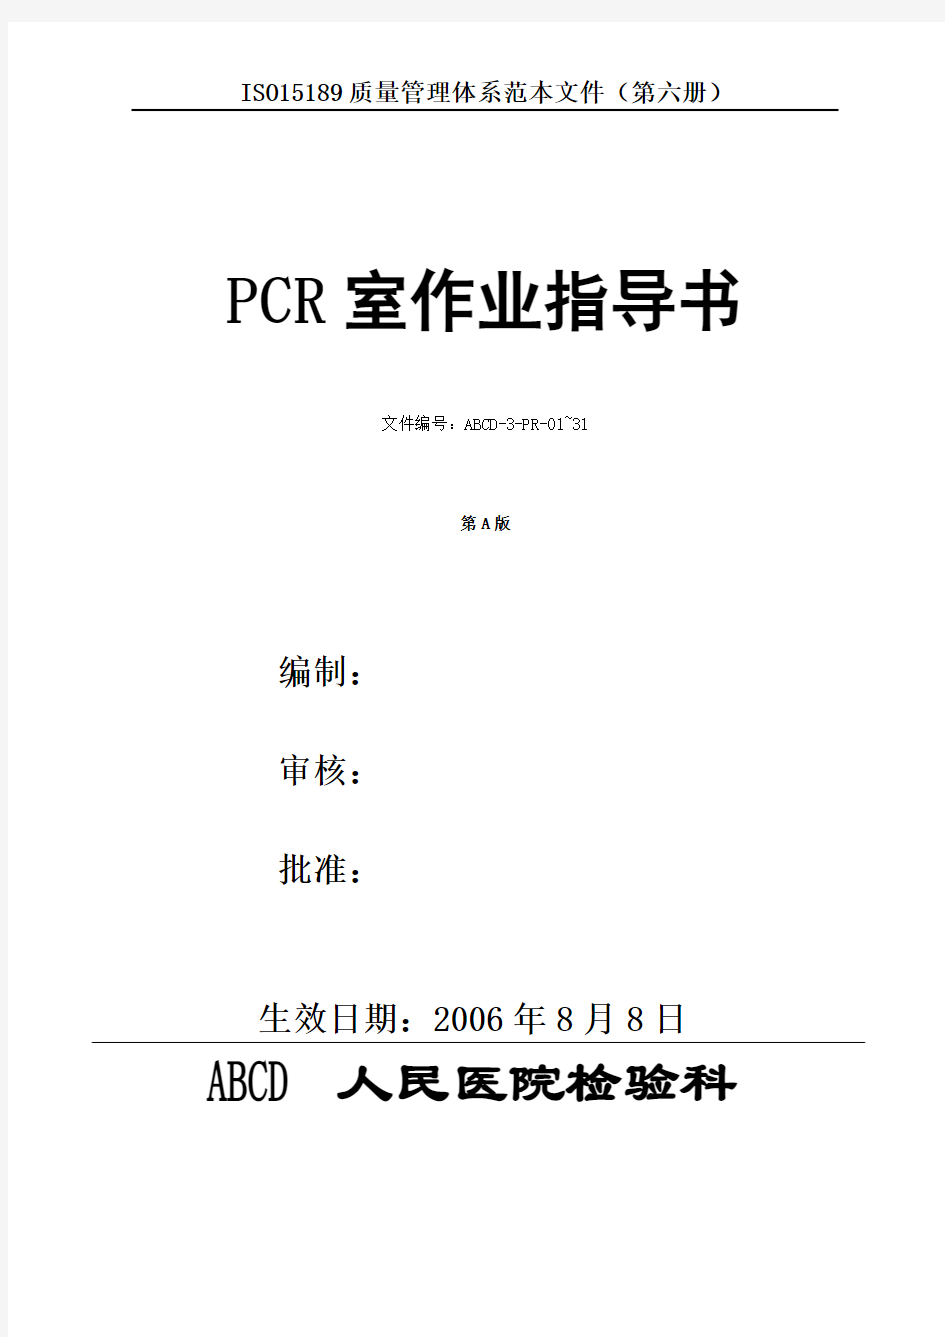 (第六册)PCR室作业指导书 检验SOP文件正文